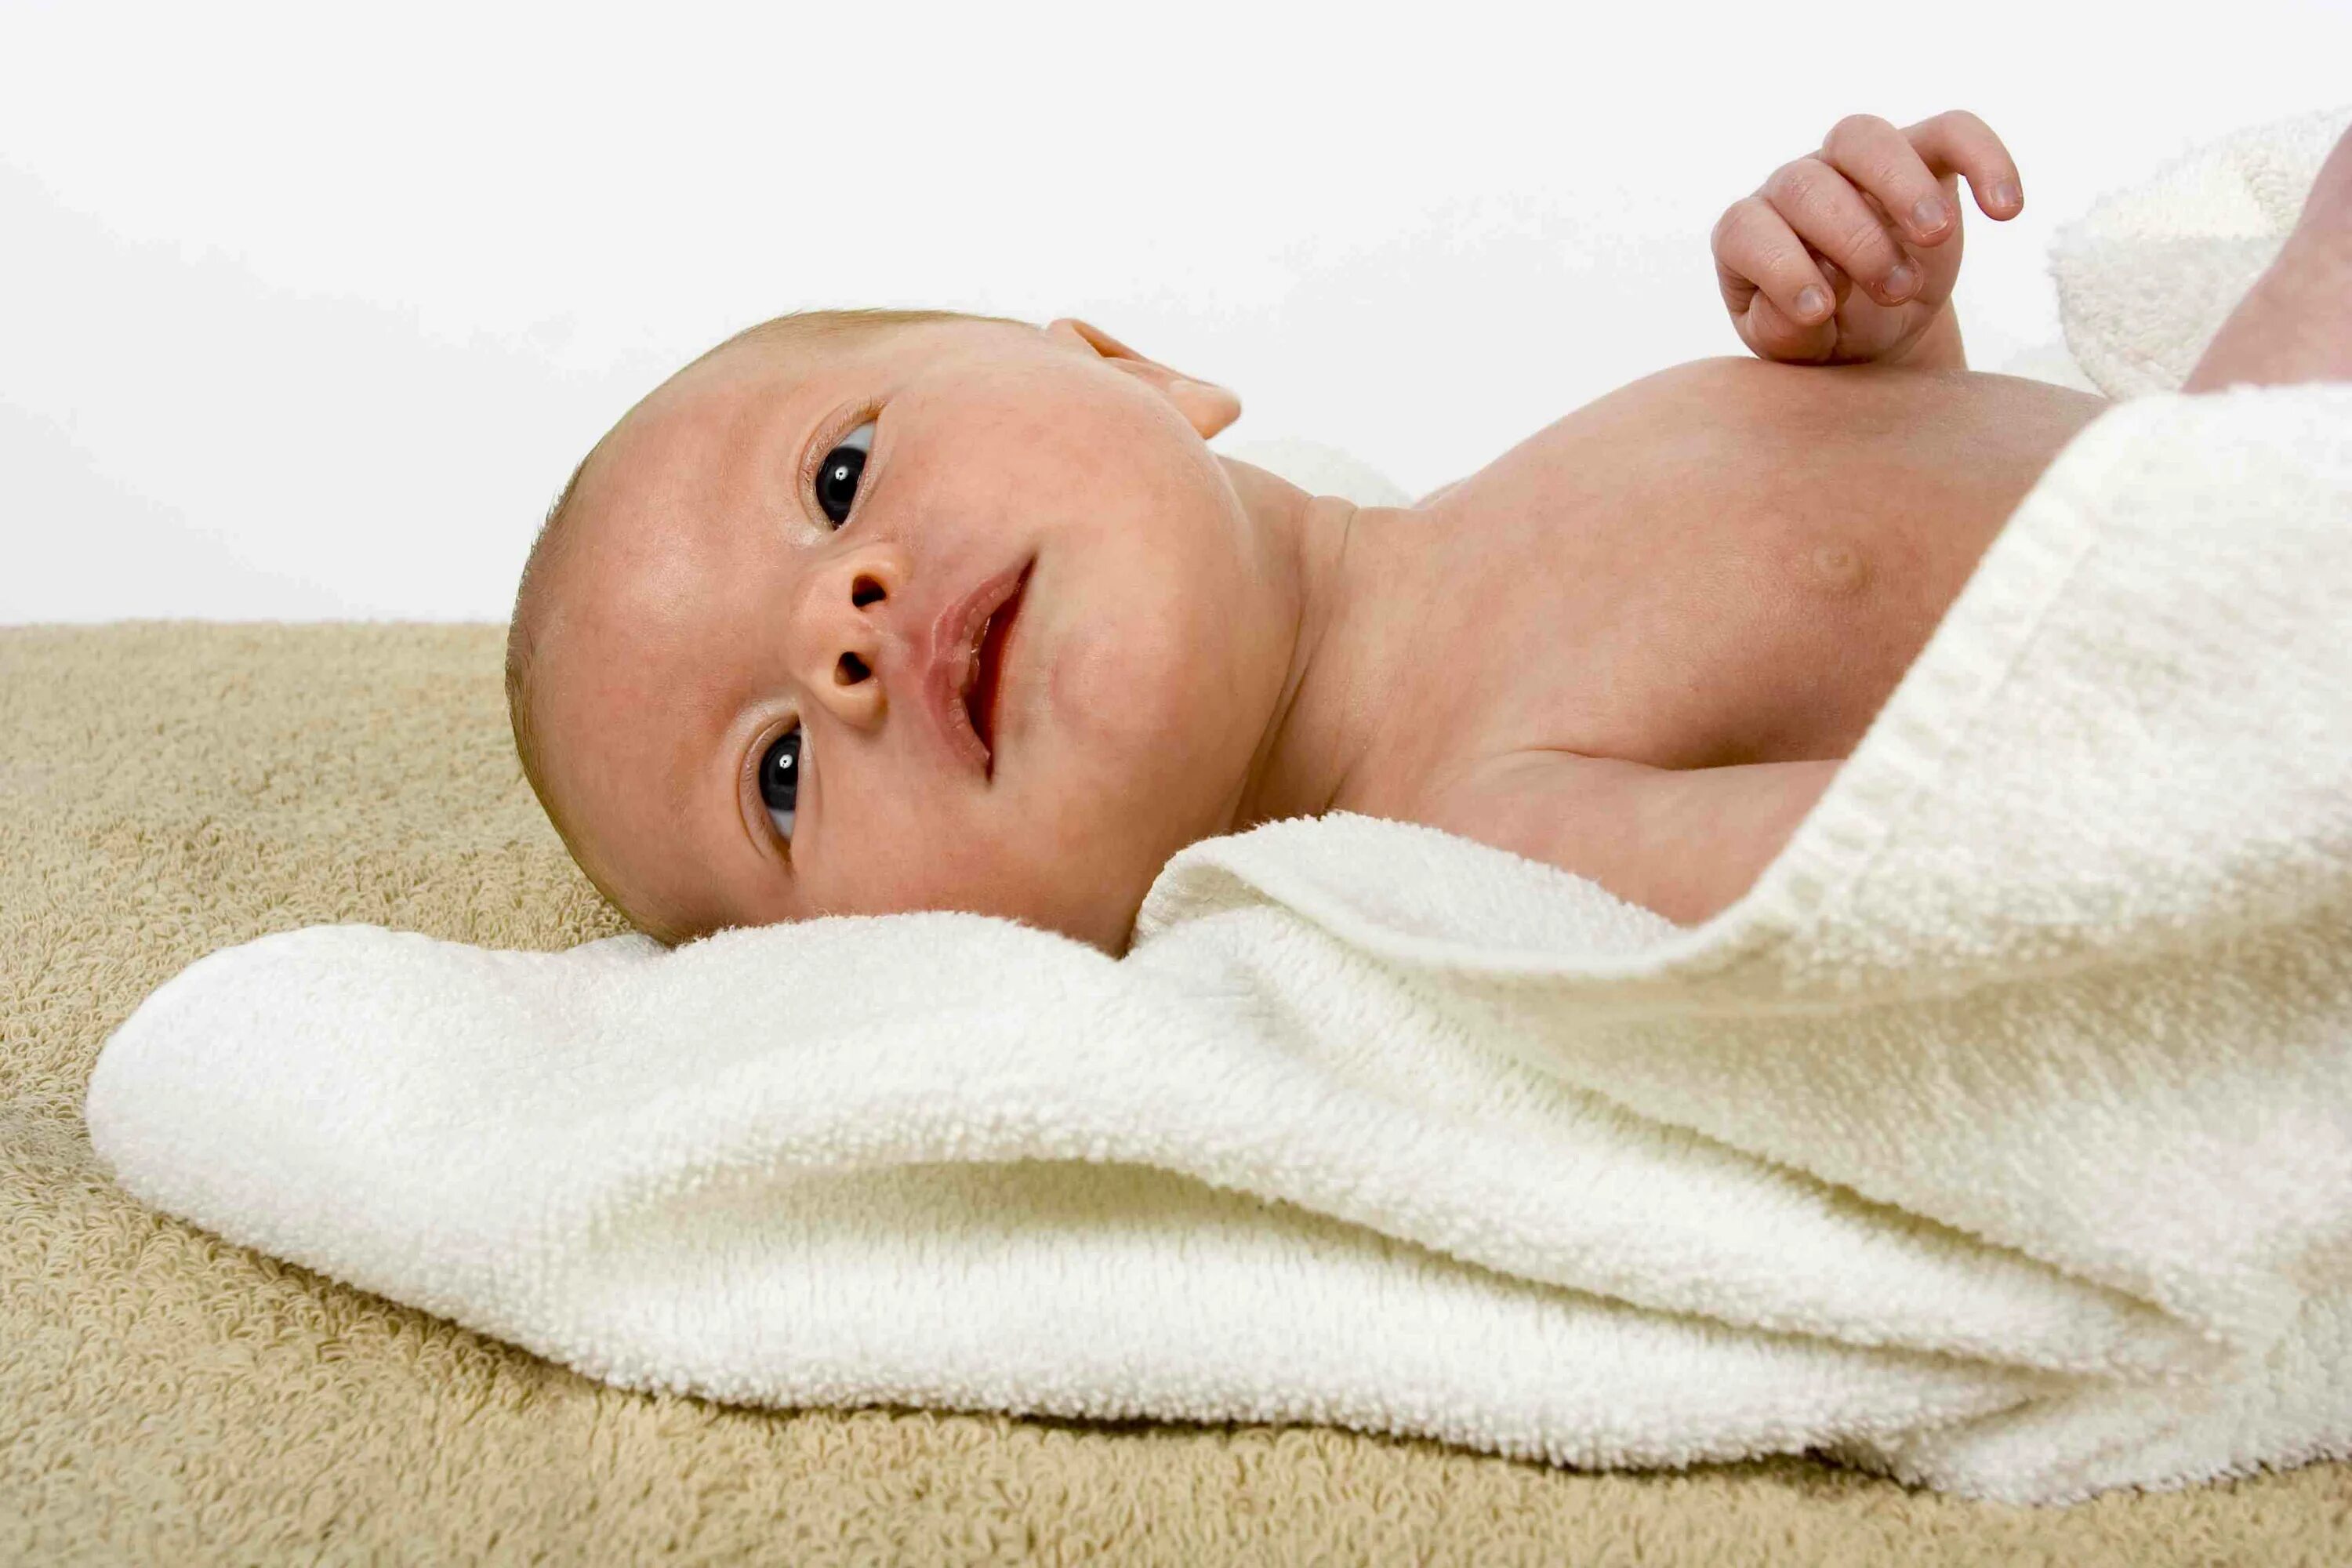 Гигиена малыша. Гигиена новорожденного фото. Дети после ванной. Младенец в полотенце.